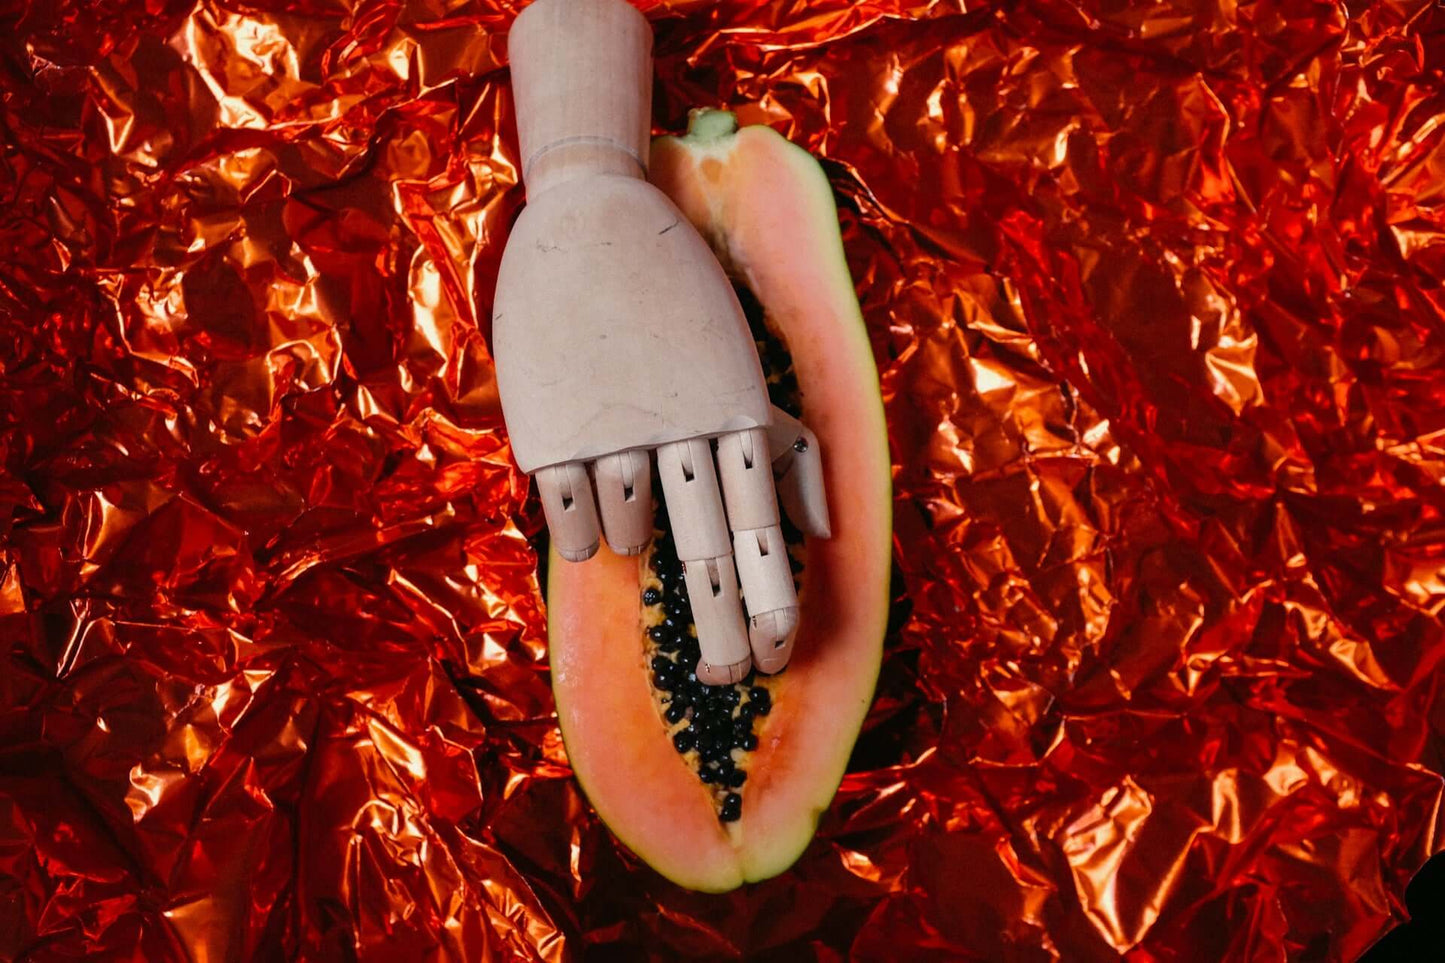 ALT-Text: "Eine hölzerne Mannequin-Hand liegt auf einer aufgeschnittenen Papaya auf einem roten metallischen Hintergrund, symbolisch für die intime Berührung im Kontext von CBD und Intimität."